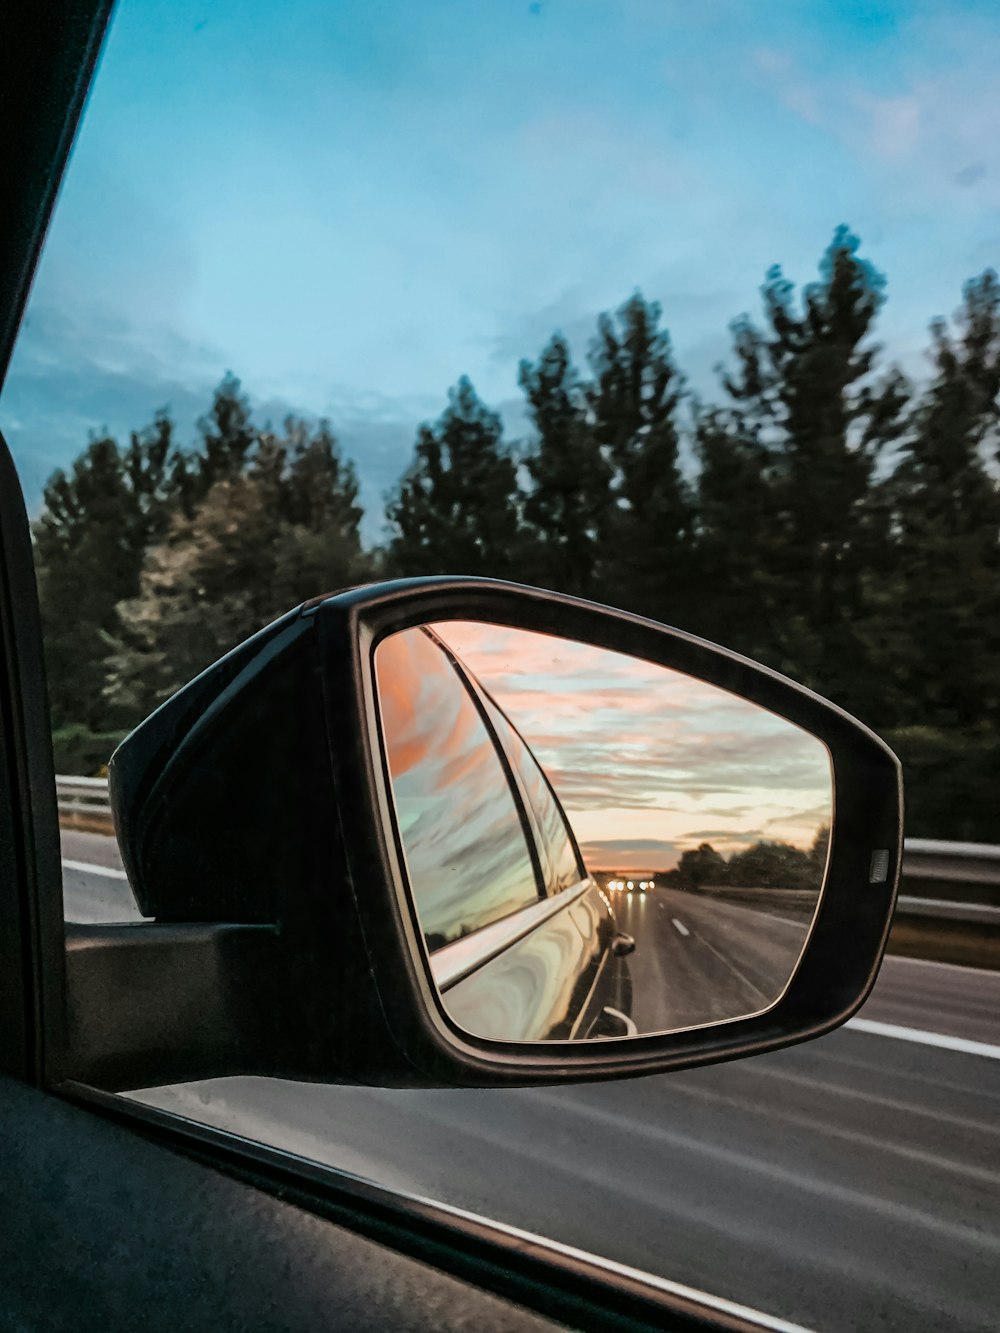 Espejo lateral del automóvil que muestra el automóvil en la carretera durante el día